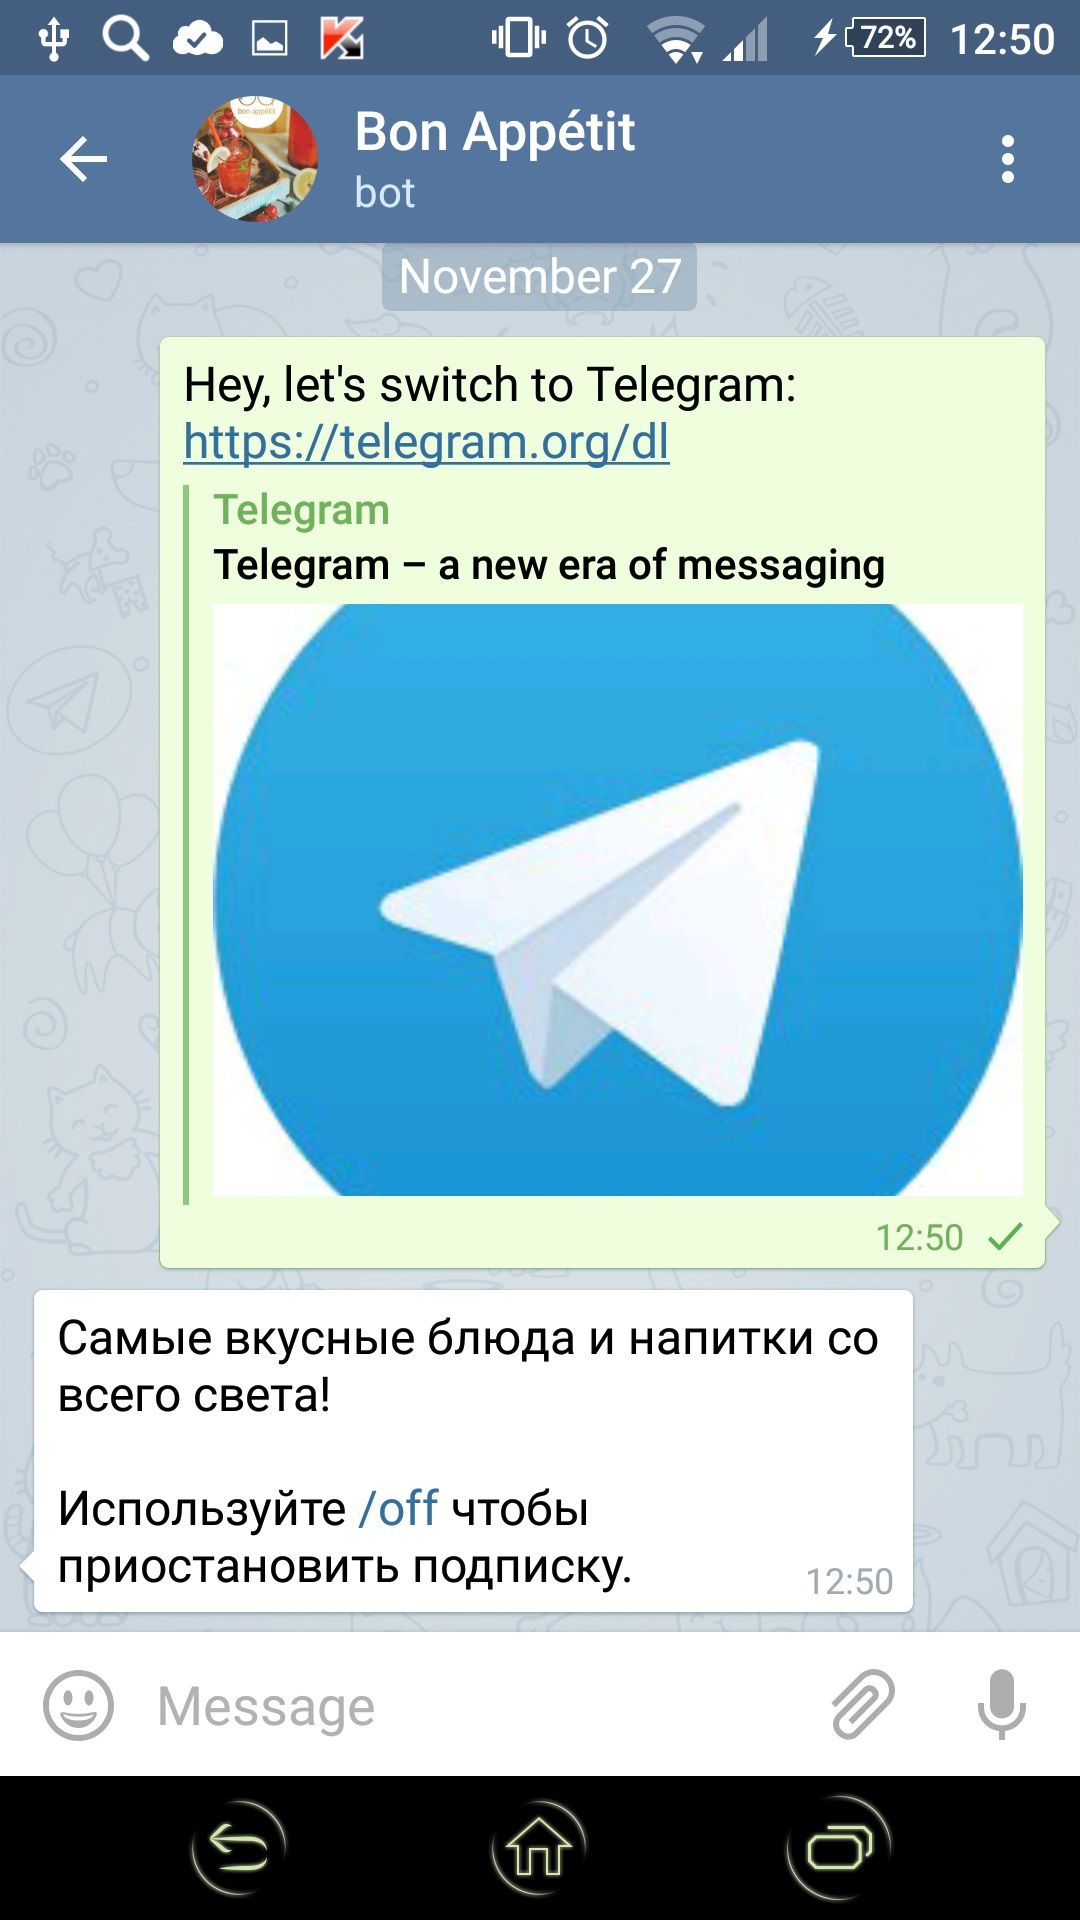 Скачать бесплатно приложение телеграмм на русском языке на телефон андроид фото 75